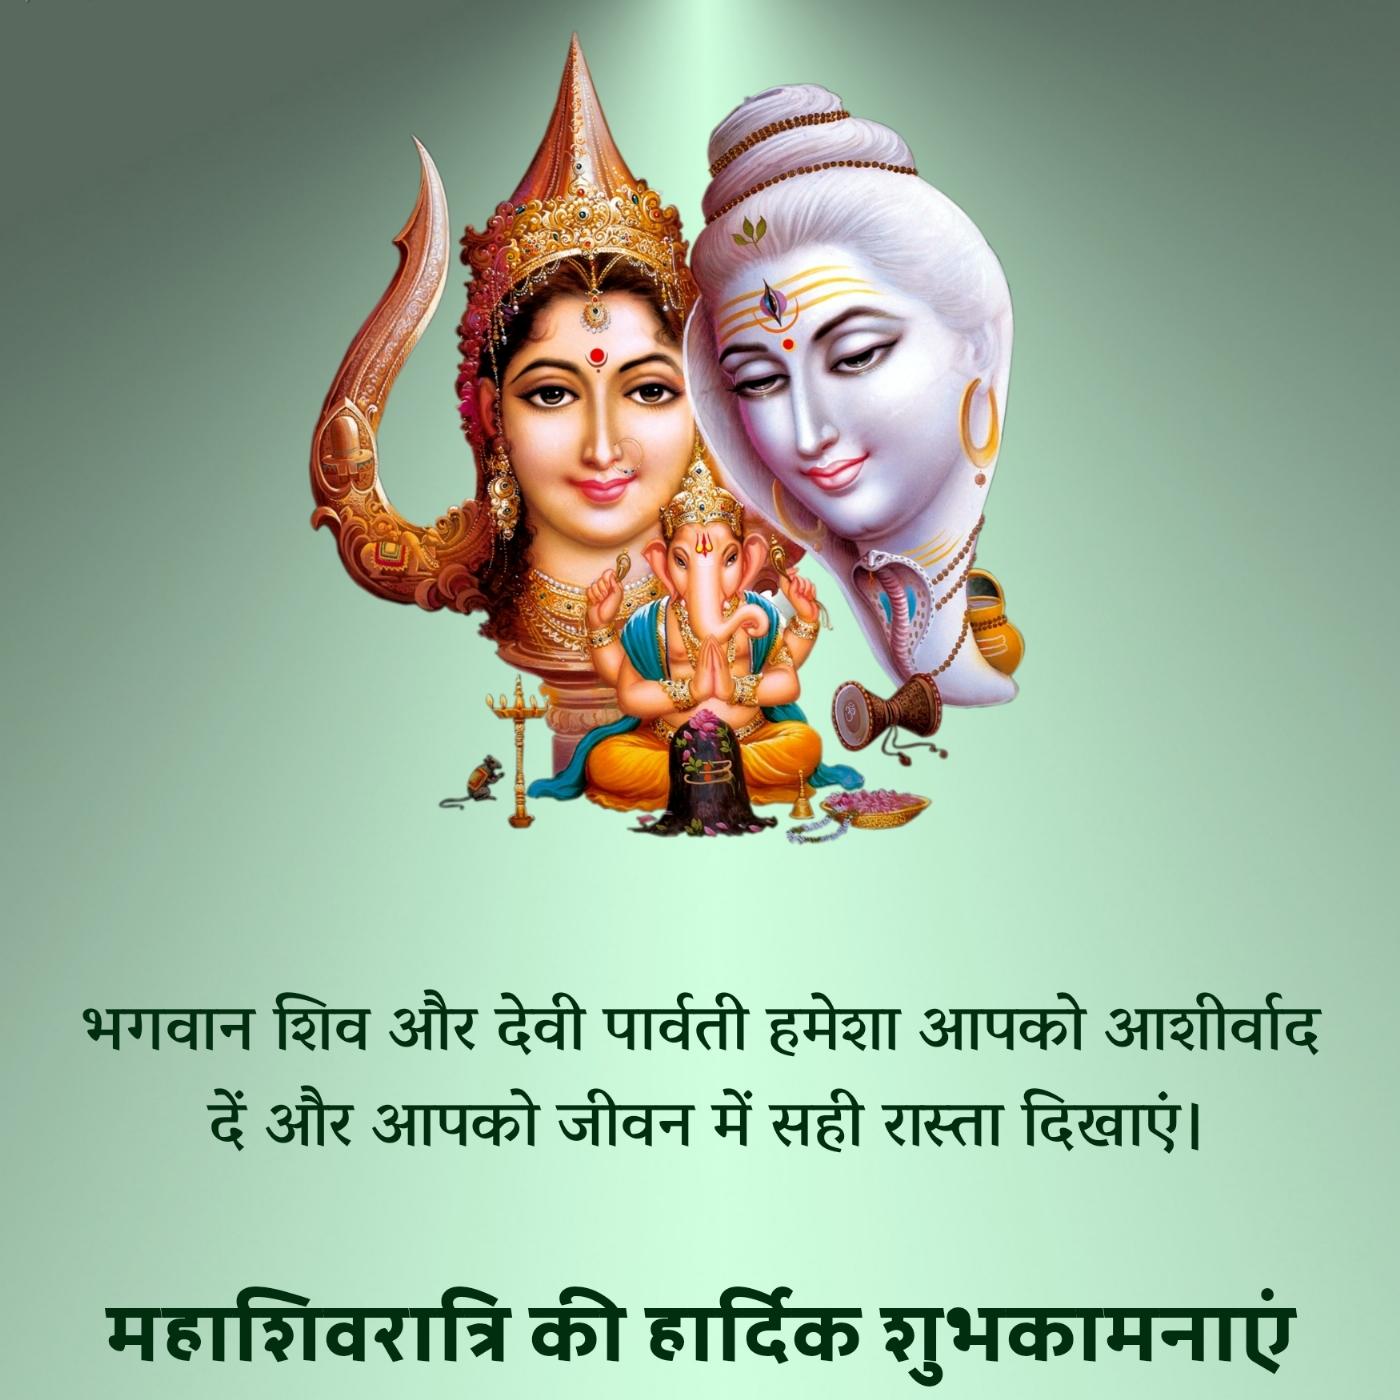 भगवान शिव और देवी पार्वती हमेशा आपको आशीर्वाद दें